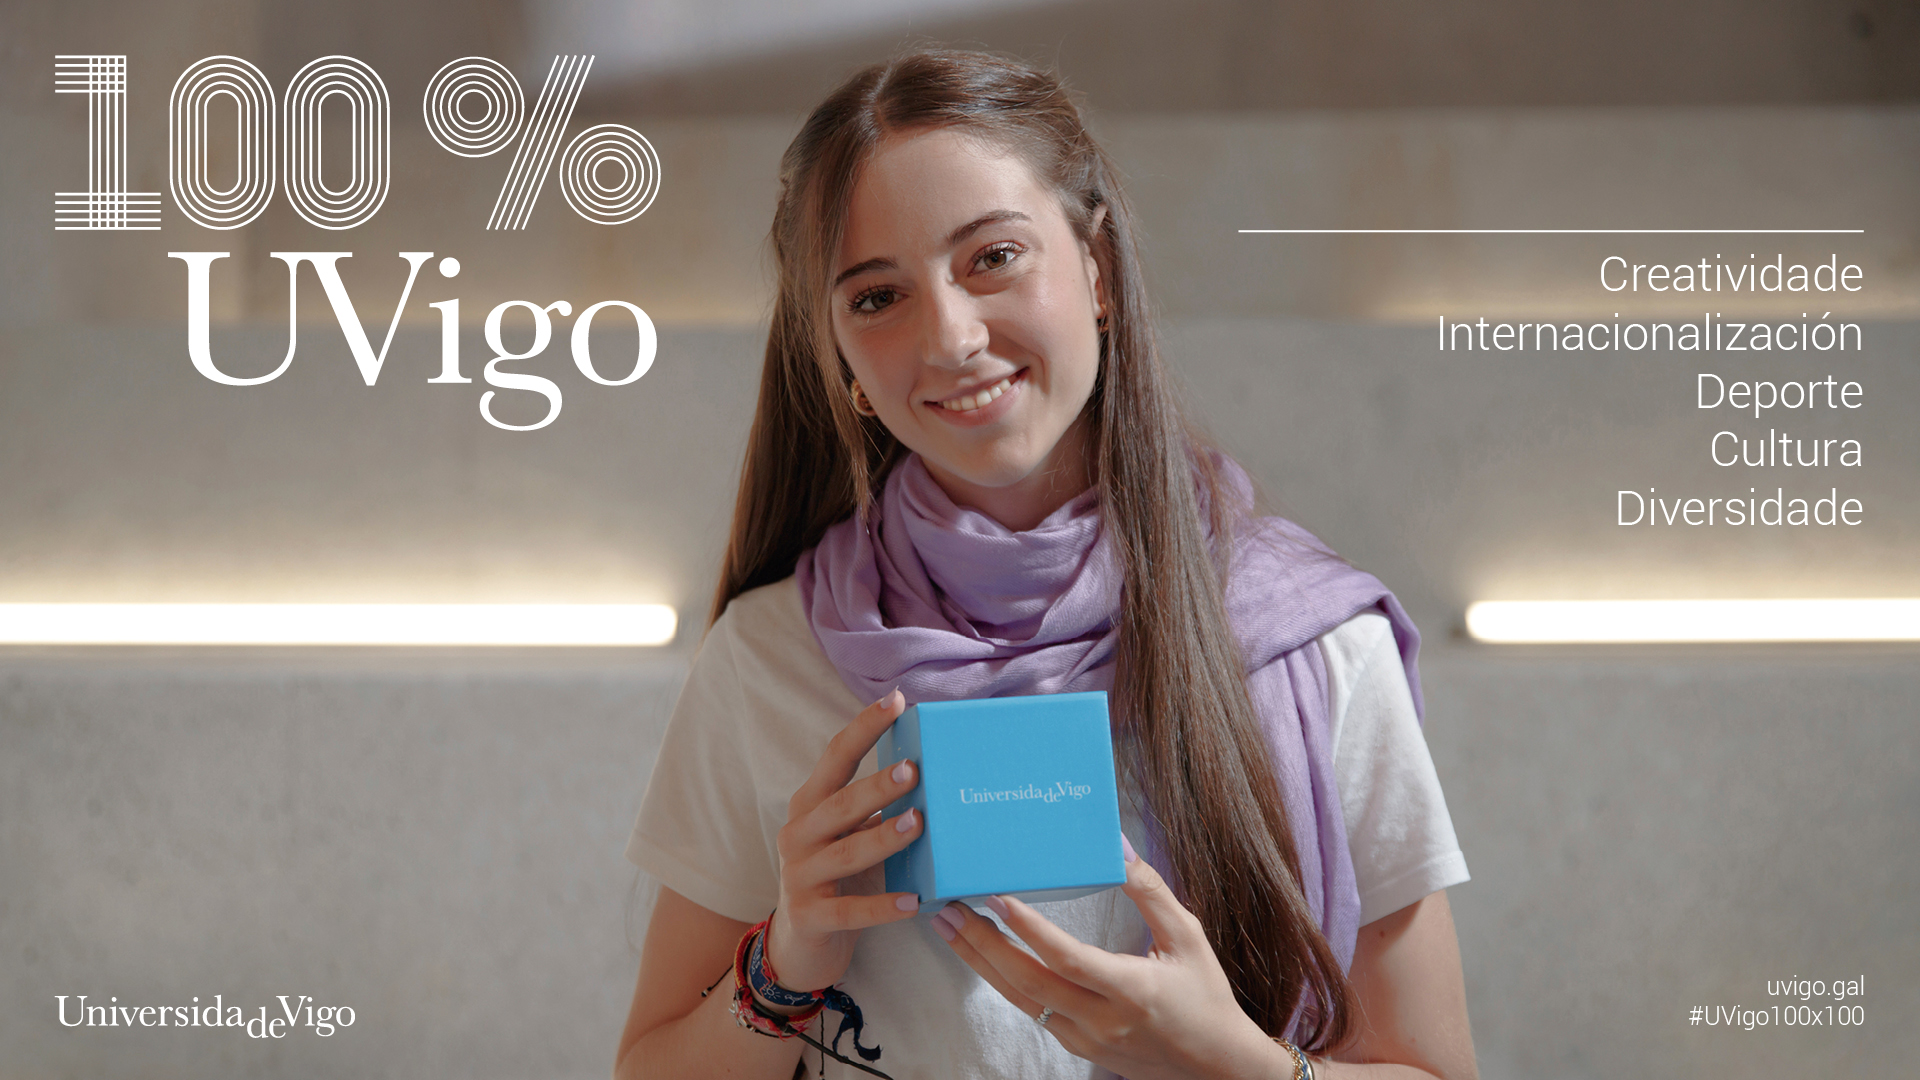 Bachelor's degree student Universidade de Vigo